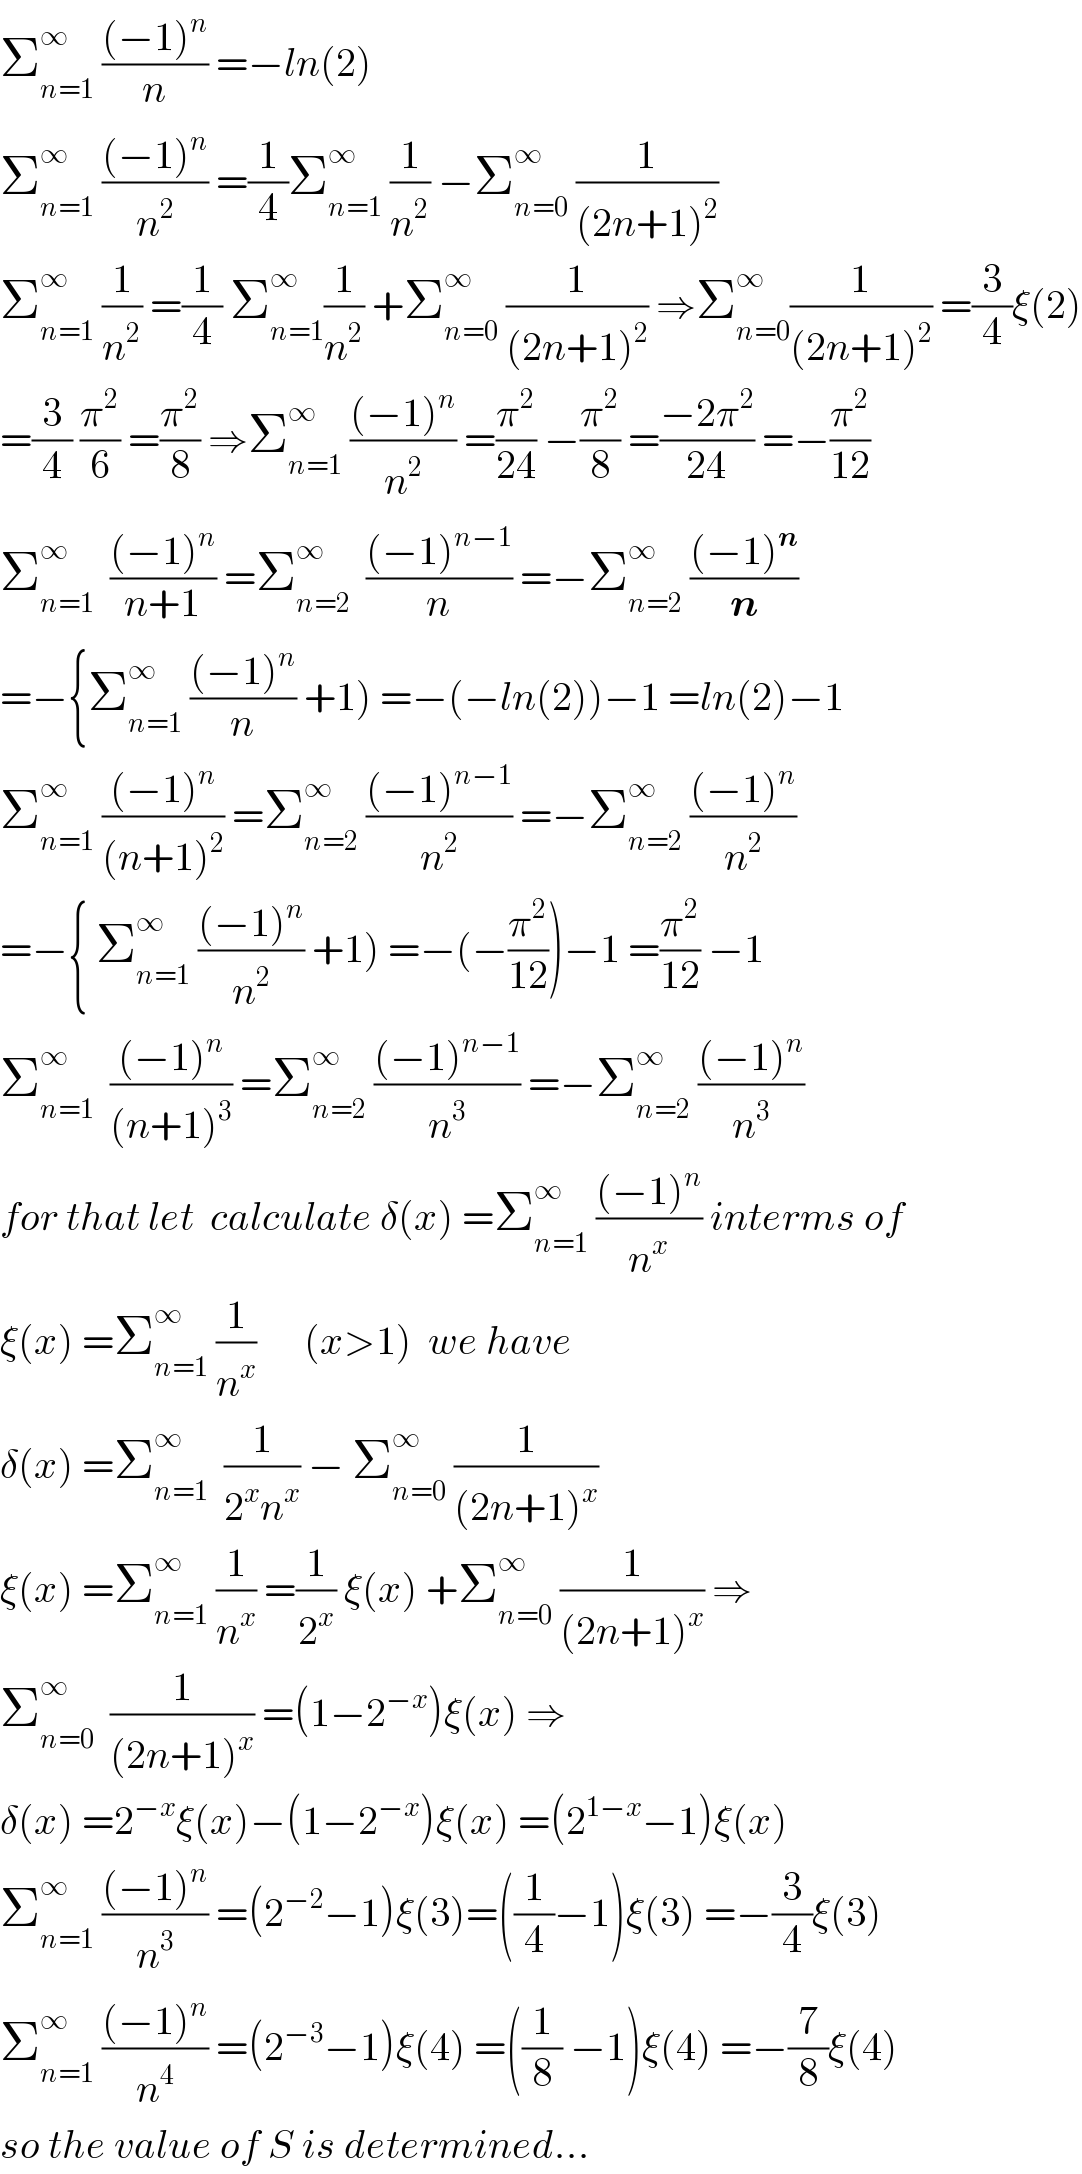 Σ_(n=1) ^∞  (((−1)^n )/n) =−ln(2)  Σ_(n=1) ^∞  (((−1)^n )/n^2 ) =(1/4)Σ_(n=1) ^∞  (1/n^2 ) −Σ_(n=0) ^∞  (1/((2n+1)^2 ))  Σ_(n=1) ^∞  (1/n^2 ) =(1/4) Σ_(n=1) ^∞ (1/n^2 ) +Σ_(n=0) ^∞  (1/((2n+1)^2 )) ⇒Σ_(n=0) ^∞ (1/((2n+1)^2 )) =(3/4)ξ(2)  =(3/4) (π^2 /6) =(π^2 /8) ⇒Σ_(n=1) ^∞  (((−1)^n )/n^2 ) =(π^2 /(24)) −(π^2 /8) =((−2π^2 )/(24)) =−(π^2 /(12))  Σ_(n=1) ^∞   (((−1)^n )/(n+1)) =Σ_(n=2) ^∞   (((−1)^(n−1) )/n) =−Σ_(n=2) ^∞  (((−1)^n )/n)  =−{Σ_(n=1) ^∞  (((−1)^n )/n) +1) =−(−ln(2))−1 =ln(2)−1  Σ_(n=1) ^∞  (((−1)^n )/((n+1)^2 )) =Σ_(n=2) ^∞  (((−1)^(n−1) )/n^2 ) =−Σ_(n=2) ^∞  (((−1)^n )/n^2 )  =−{ Σ_(n=1) ^∞  (((−1)^n )/n^2 ) +1) =−(−(π^2 /(12)))−1 =(π^2 /(12)) −1  Σ_(n=1) ^∞   (((−1)^n )/((n+1)^3 )) =Σ_(n=2) ^∞  (((−1)^(n−1) )/n^3 ) =−Σ_(n=2) ^∞  (((−1)^n )/n^3 )  for that let  calculate δ(x) =Σ_(n=1) ^∞  (((−1)^n )/n^x ) interms of  ξ(x) =Σ_(n=1) ^∞  (1/n^x )      (x>1)  we have   δ(x) =Σ_(n=1) ^∞   (1/(2^x n^x )) − Σ_(n=0) ^∞  (1/((2n+1)^x ))   ξ(x) =Σ_(n=1) ^∞  (1/n^x ) =(1/2^x ) ξ(x) +Σ_(n=0) ^∞  (1/((2n+1)^x )) ⇒  Σ_(n=0) ^∞   (1/((2n+1)^x )) =(1−2^(−x) )ξ(x) ⇒  δ(x) =2^(−x) ξ(x)−(1−2^(−x) )ξ(x) =(2^(1−x) −1)ξ(x)  Σ_(n=1) ^∞  (((−1)^n )/n^3 ) =(2^(−2) −1)ξ(3)=((1/4)−1)ξ(3) =−(3/4)ξ(3)  Σ_(n=1) ^∞  (((−1)^n )/n^4 ) =(2^(−3) −1)ξ(4) =((1/8) −1)ξ(4) =−(7/8)ξ(4)  so the value of S is determined...  